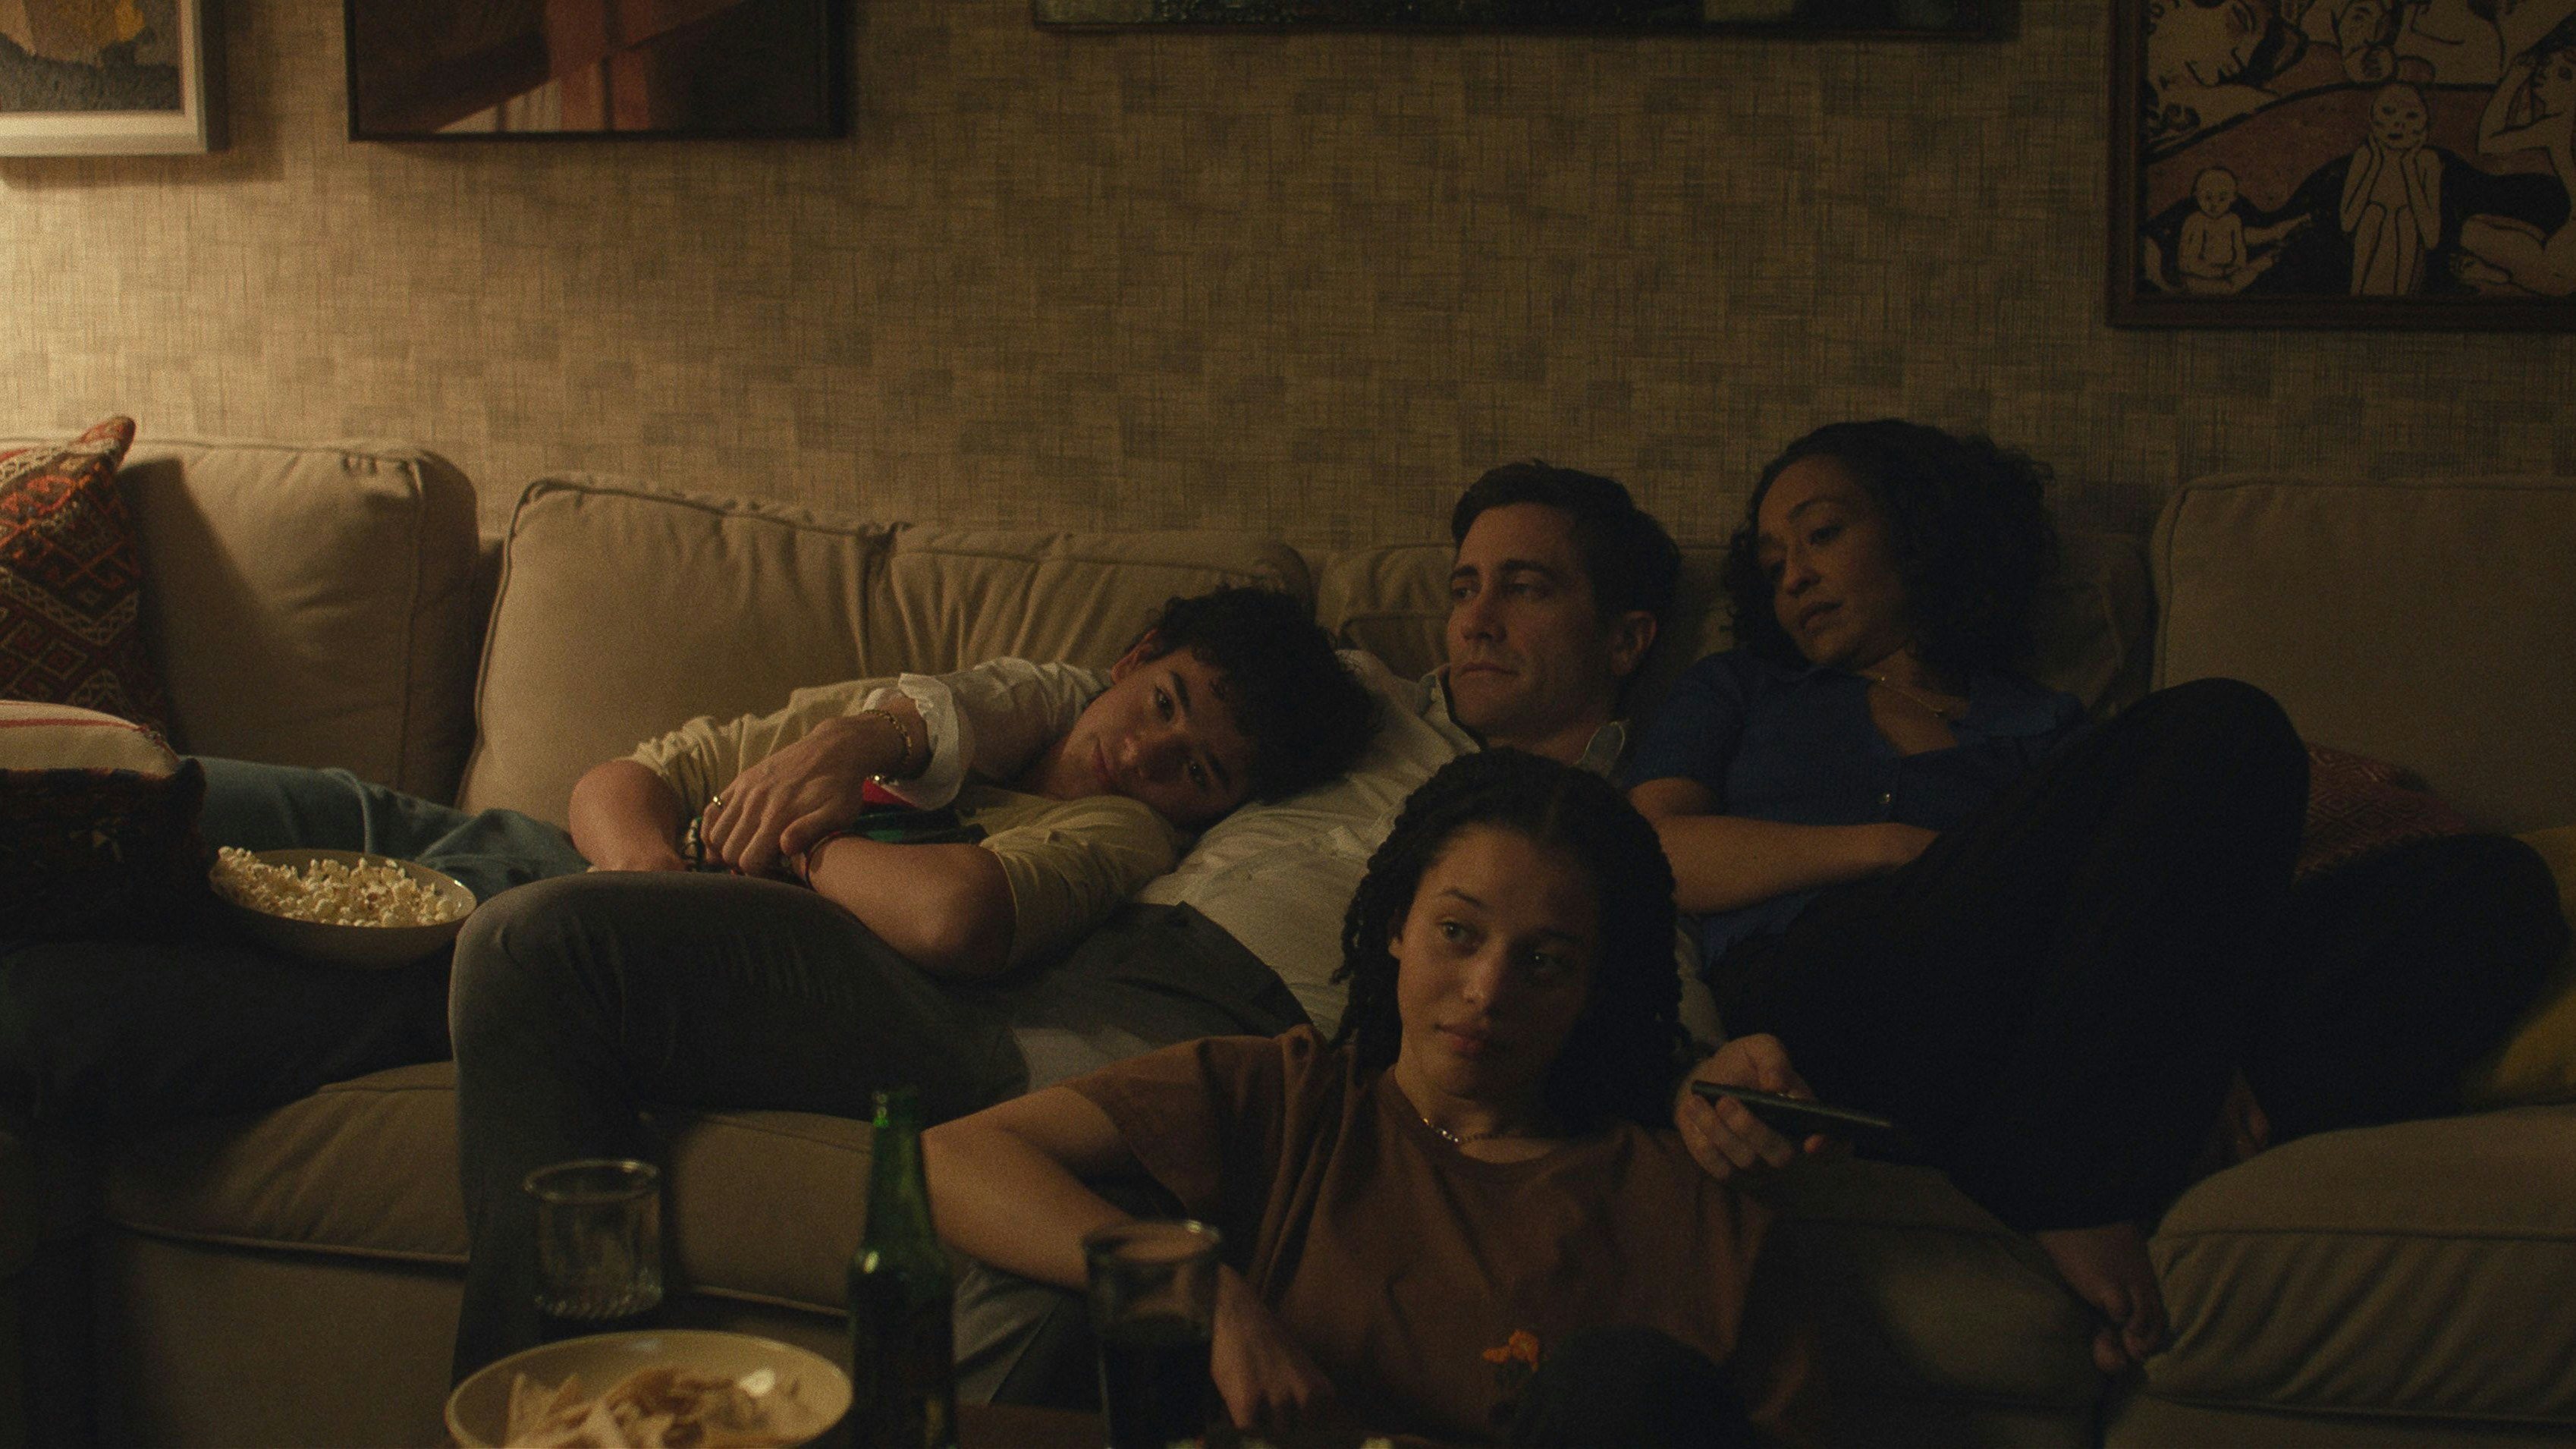 Rusty (Jake Gyllenhaal), Barbara (Ruth Negga), Jaden (Chase Infiniti) und Kyle (Kingston Rumi Southwick) führen ein an sich beschauliches Familienleben